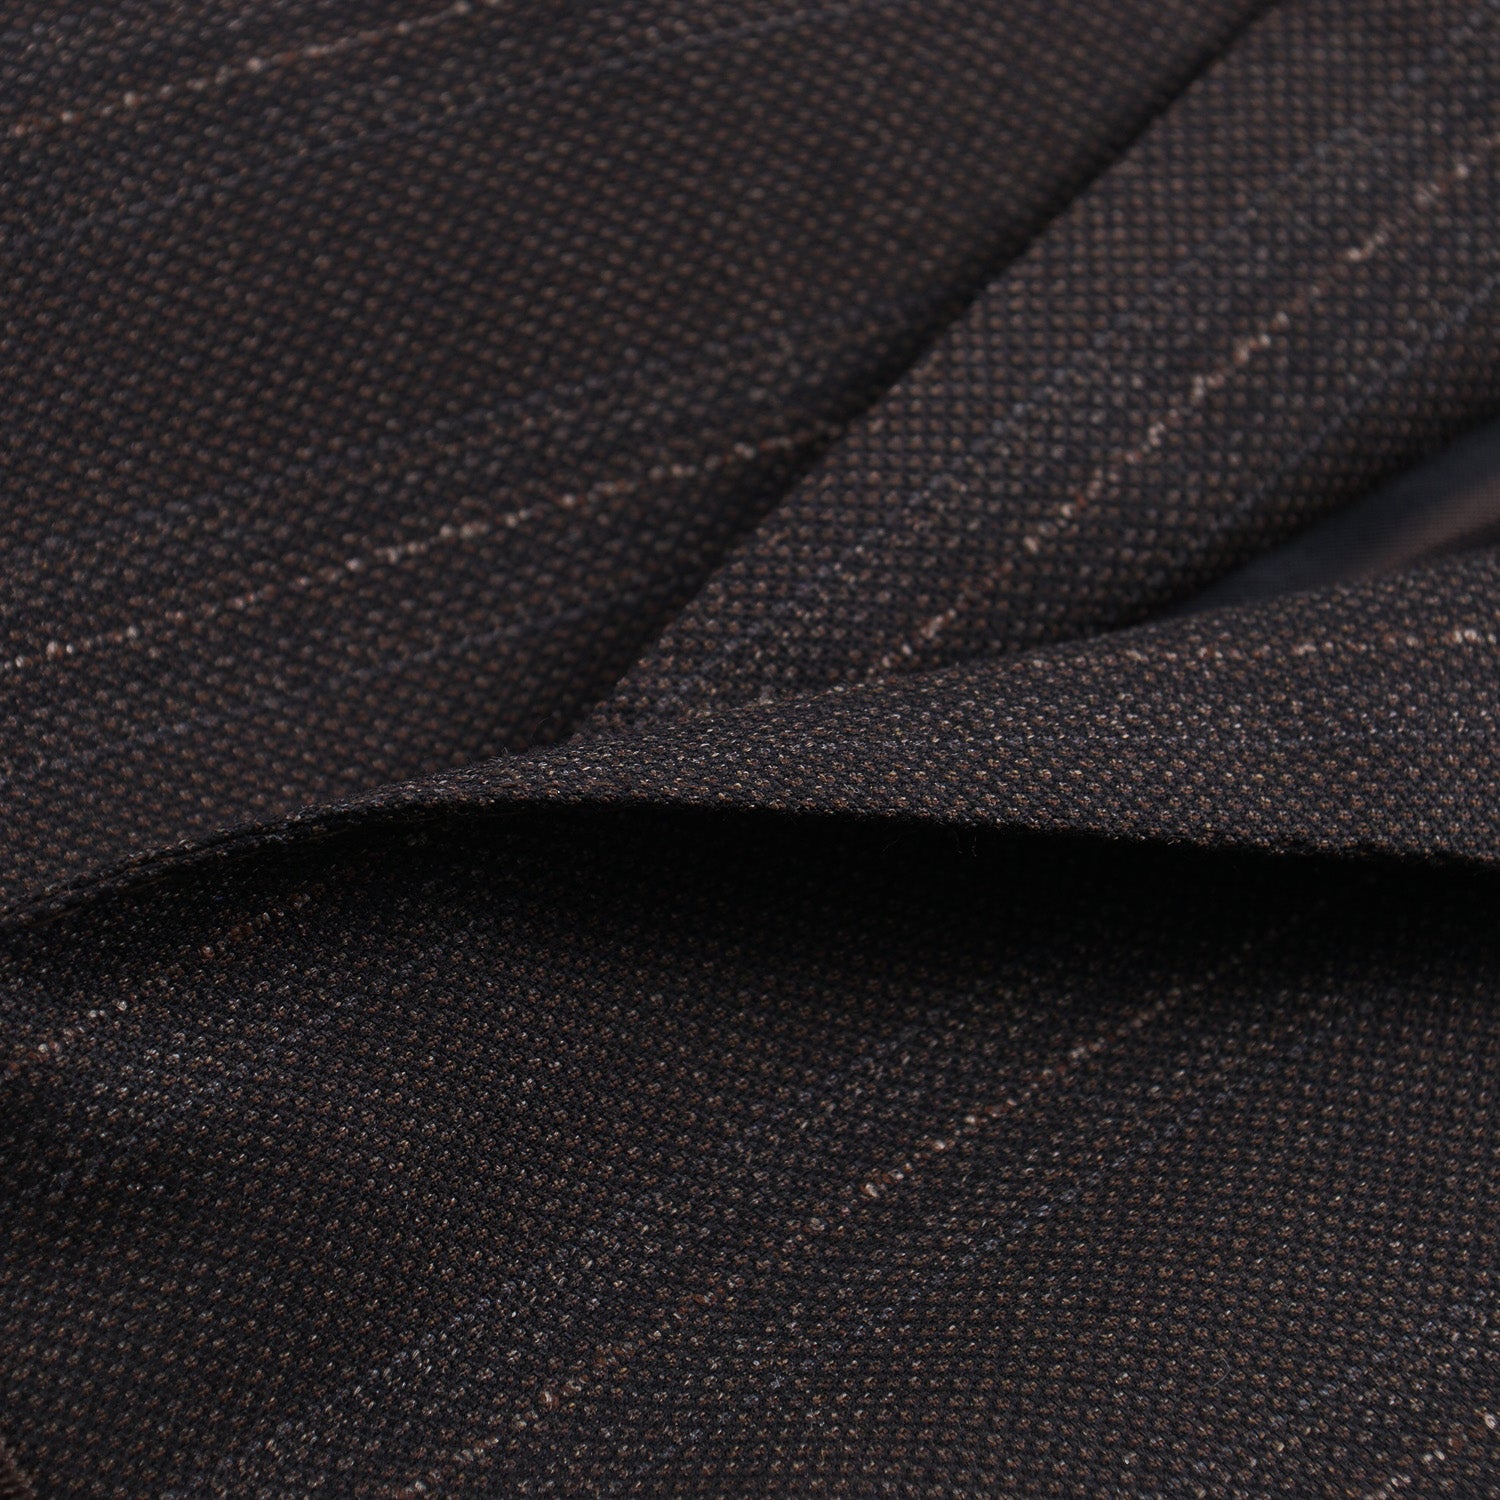 Isaia 'Sanita' Woven Stripe Wool Suit - Top Shelf Apparel